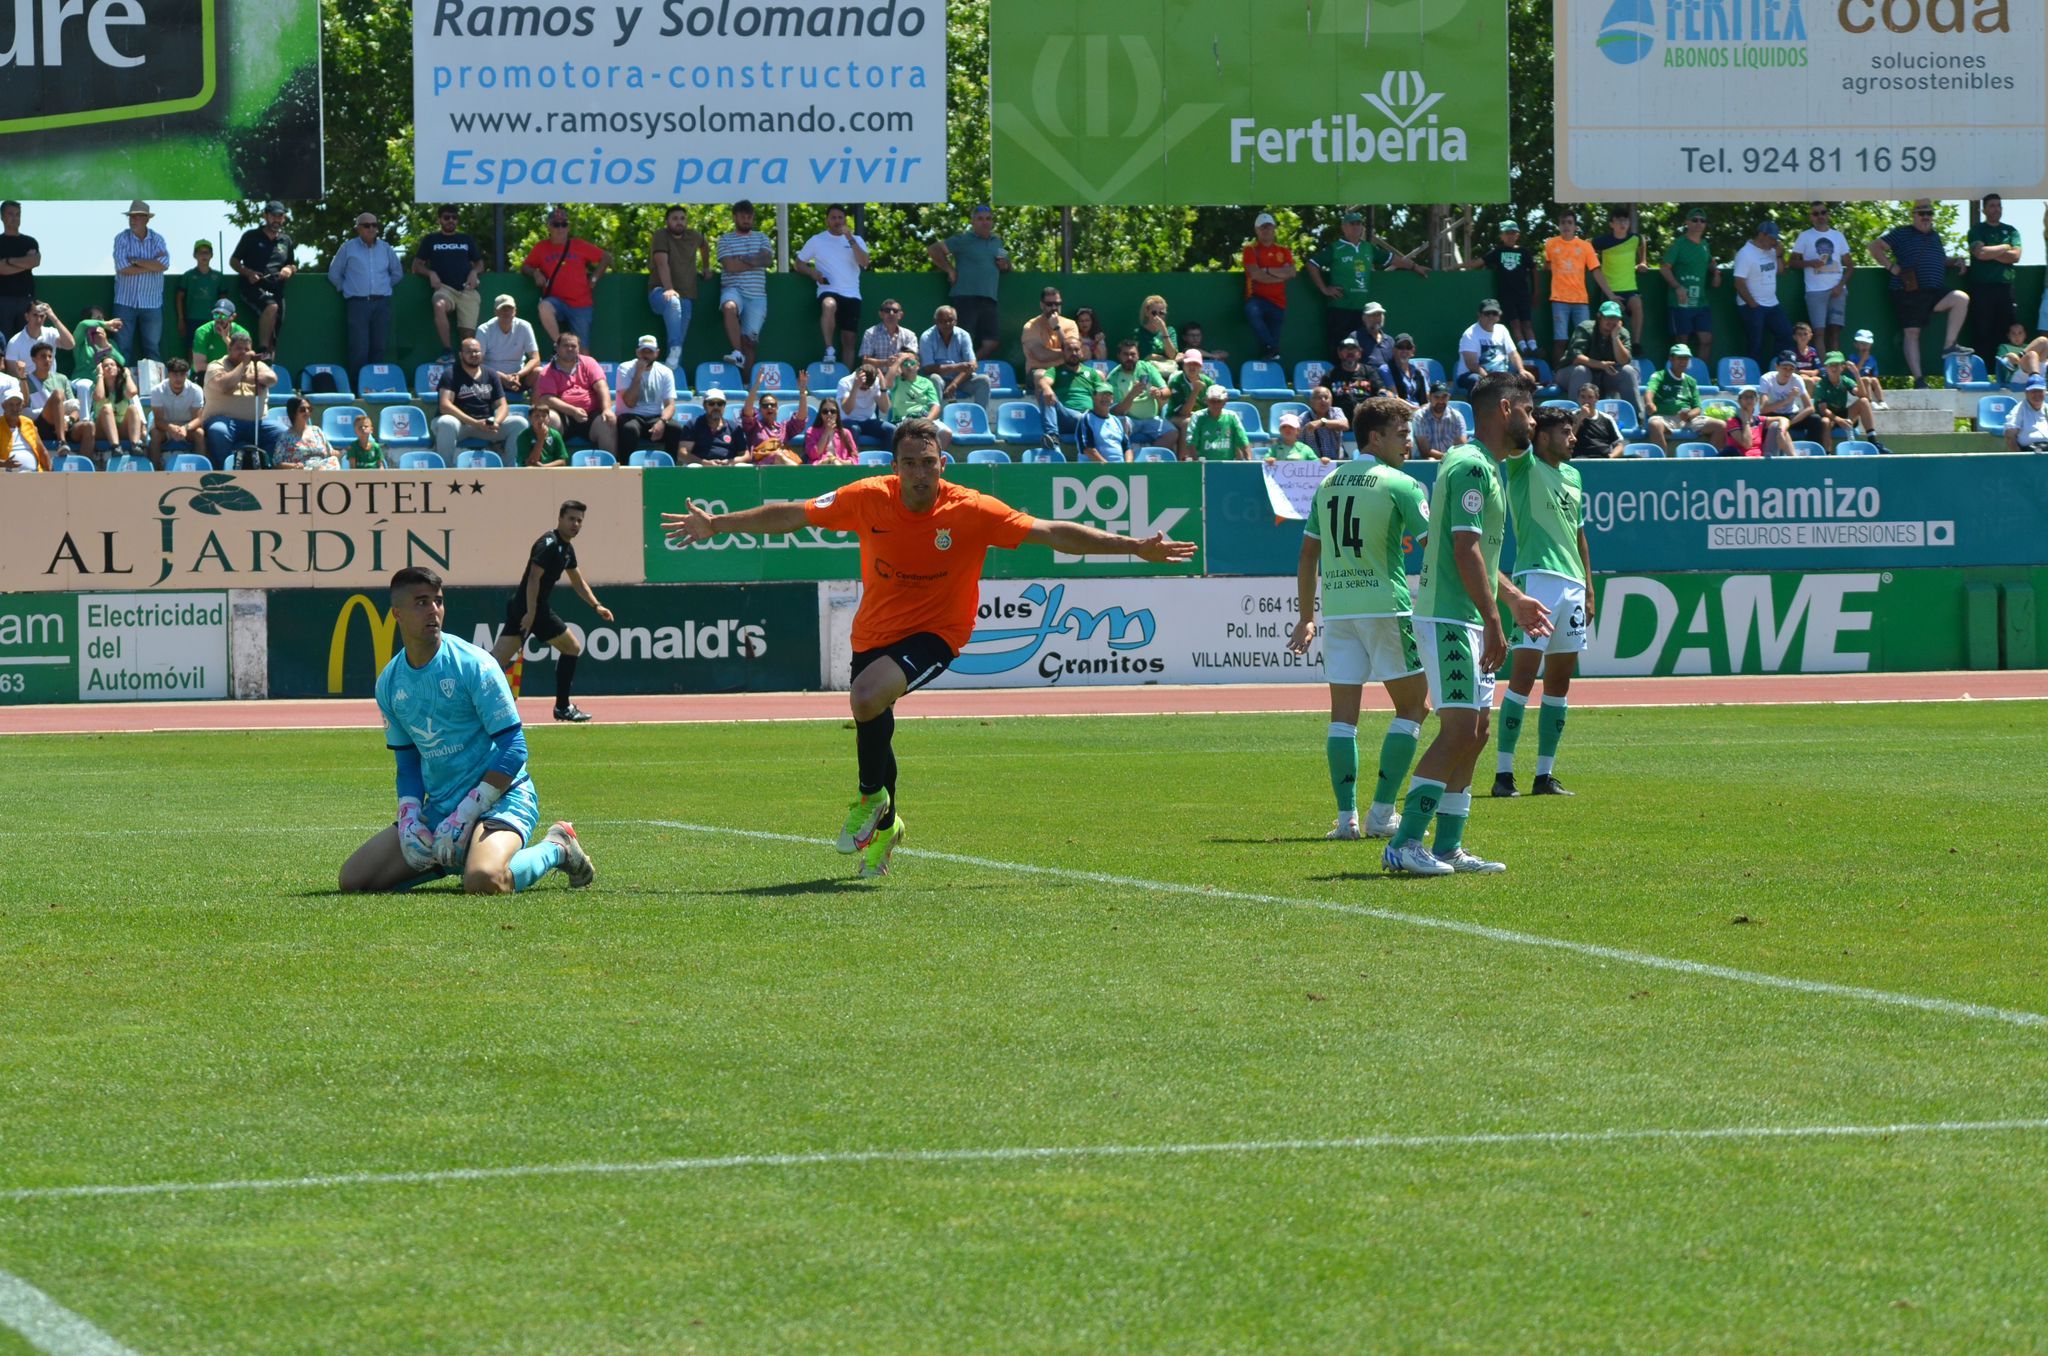 Boris Garrós ha estat l'home del partit amb un doblet. FOTO: Cerdanyola FC